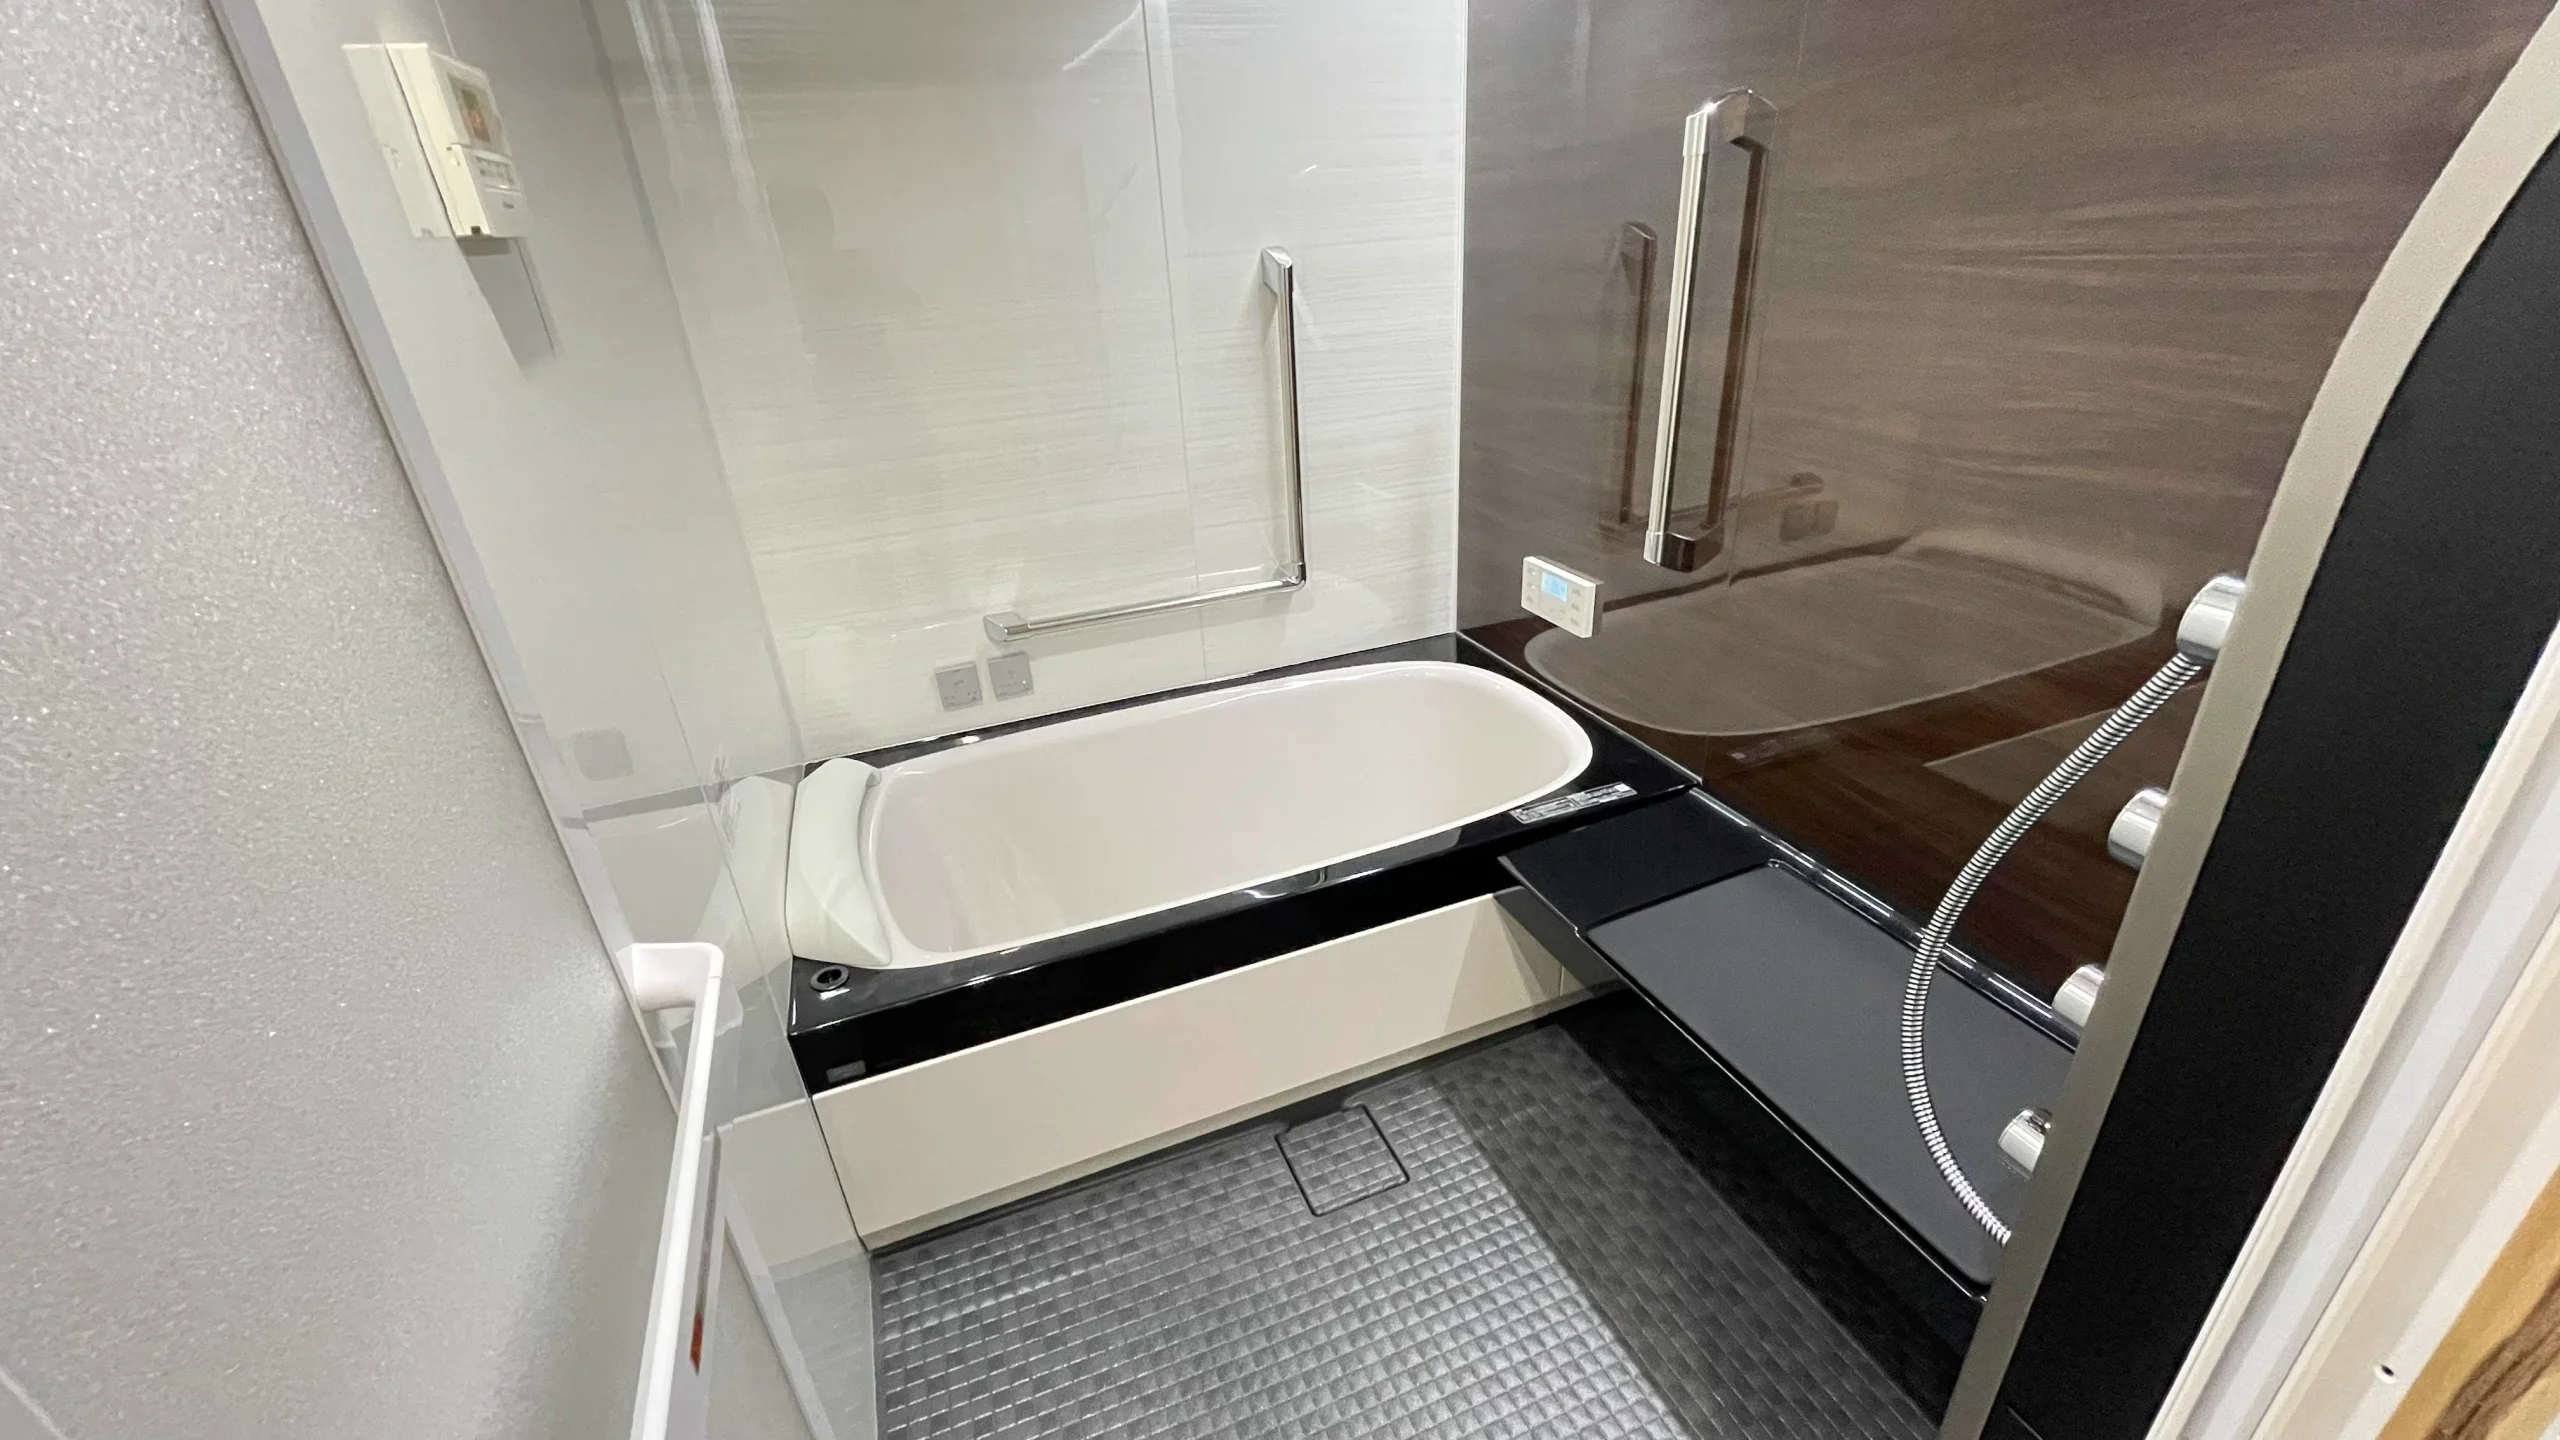 リクシルユニットバス「スパージュ」洗面台「ルミシス」を使用した事例！浴乾交換も！